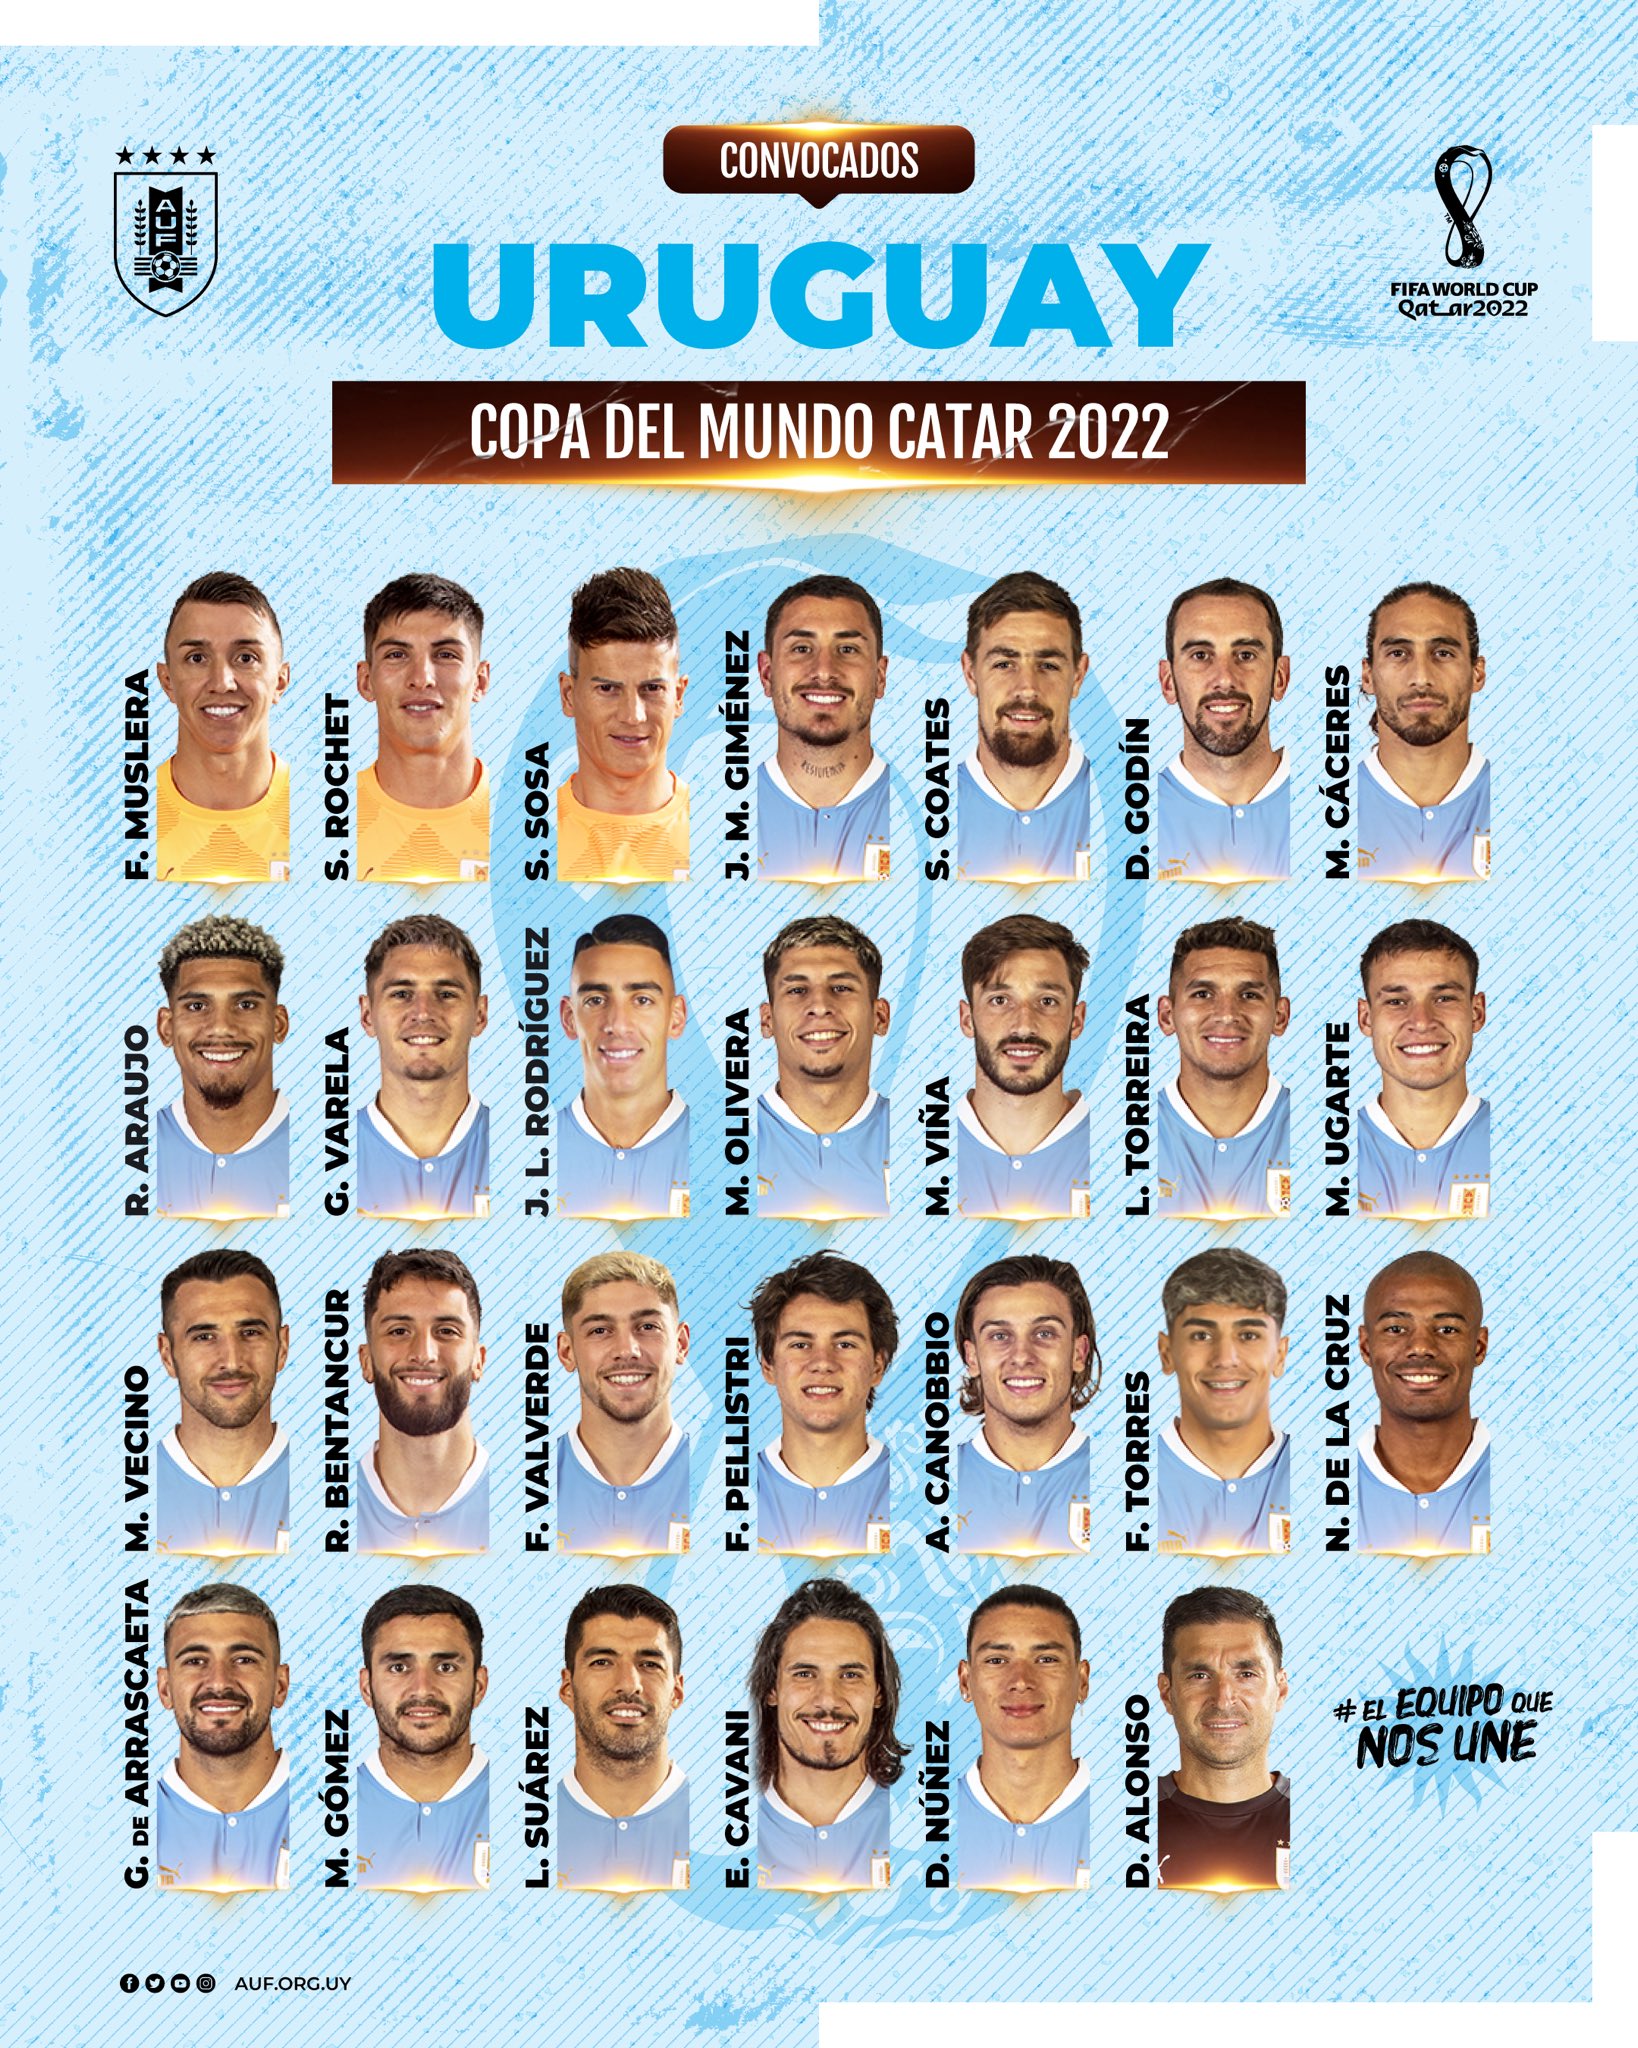 Uruguai divulga convocação para as Elminatórias com jogadores de